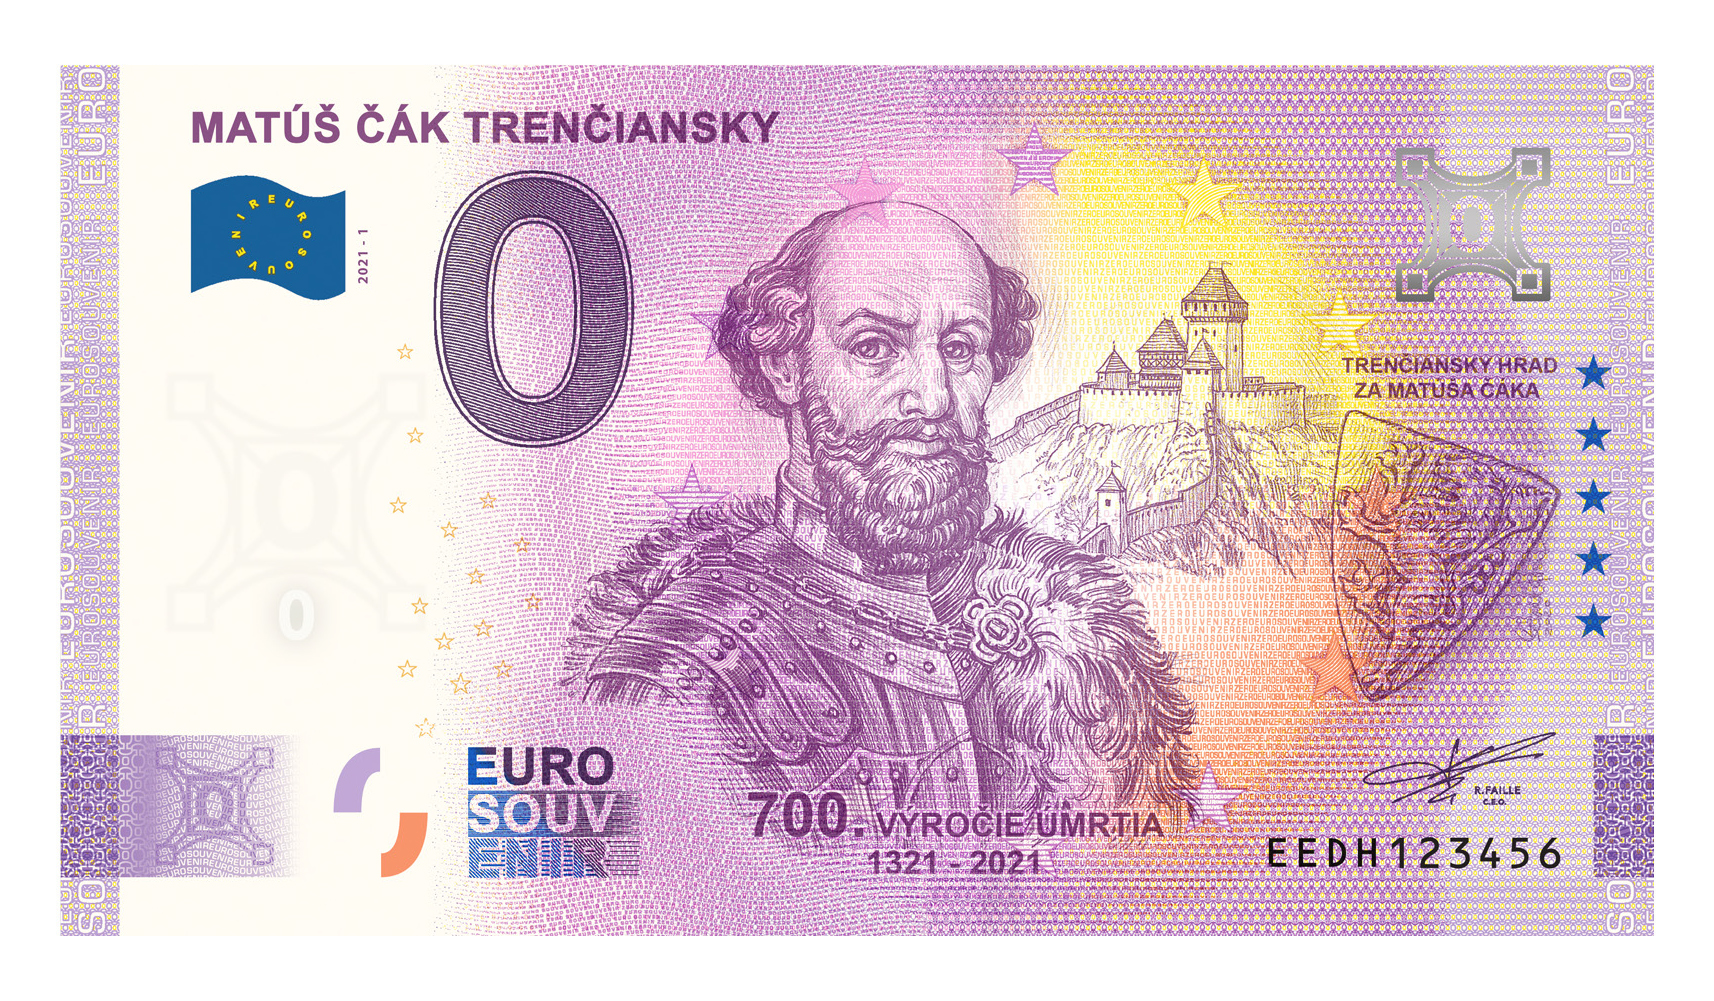 Suvenirova eurobankovka